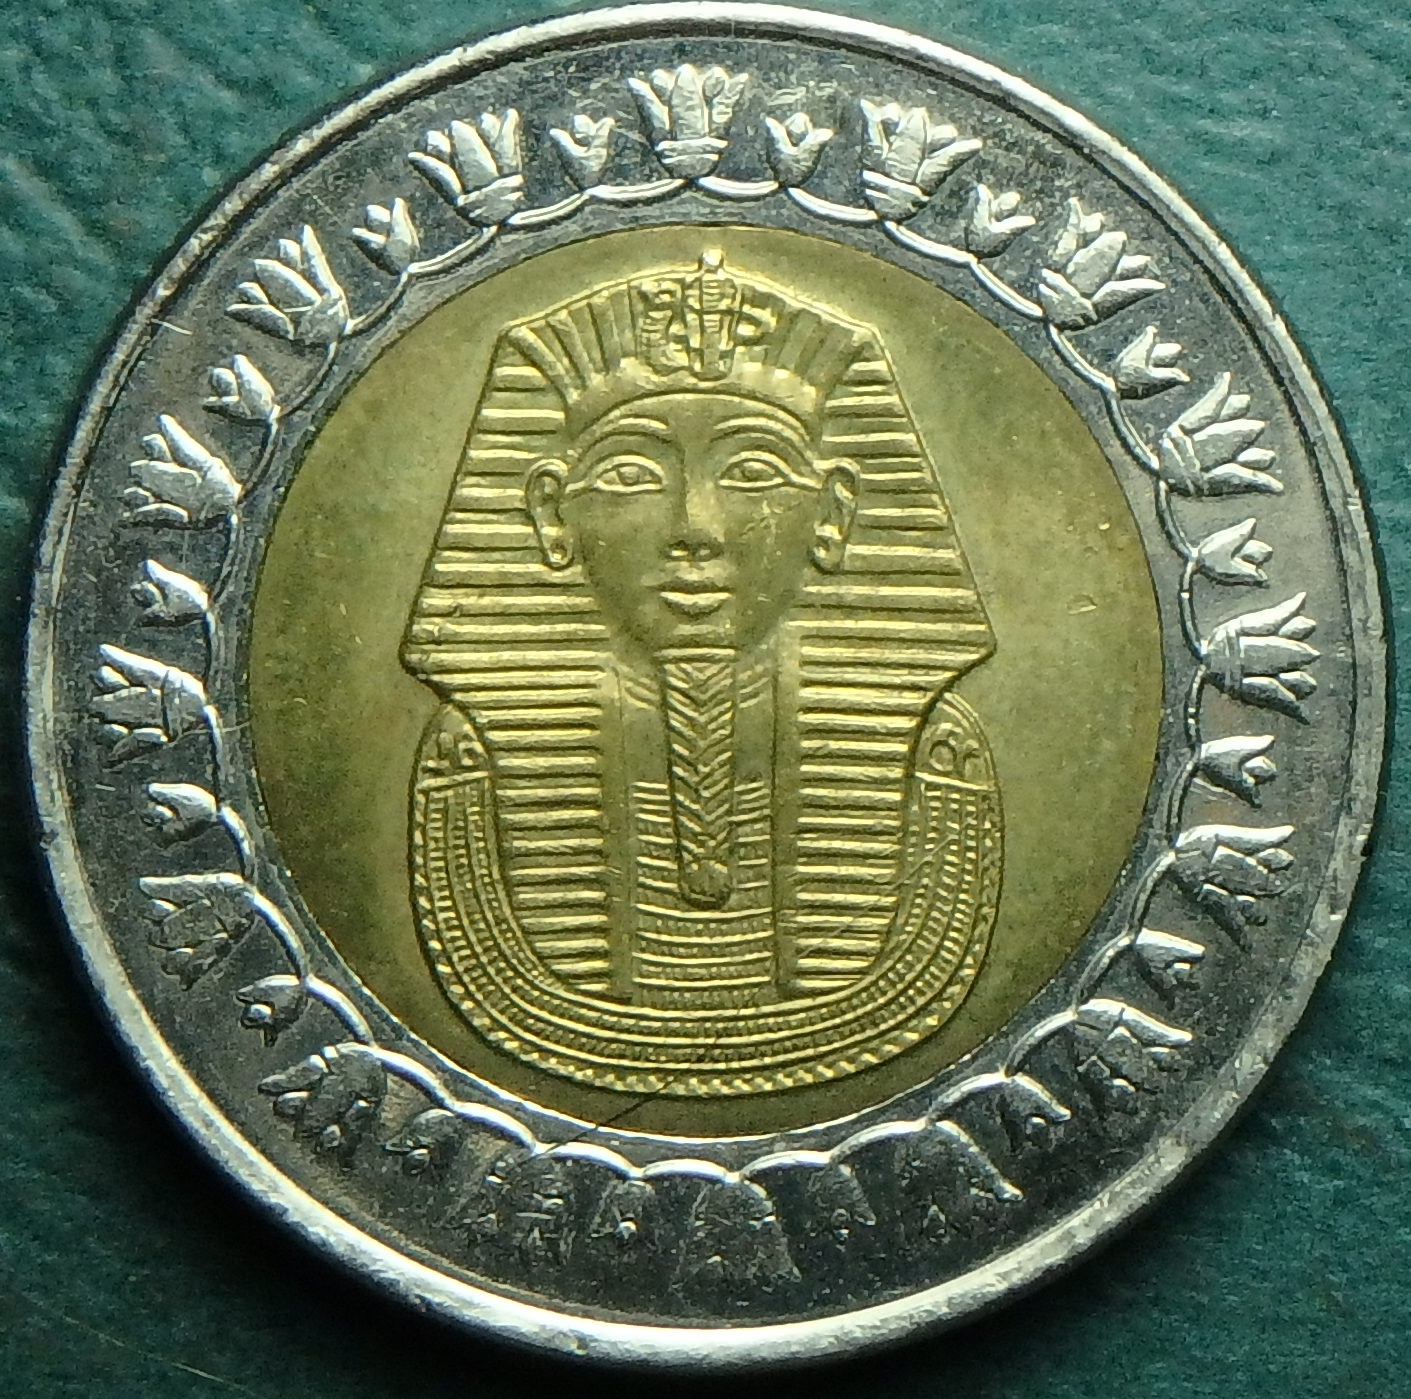 2008 EG 1 pound obv.JPG